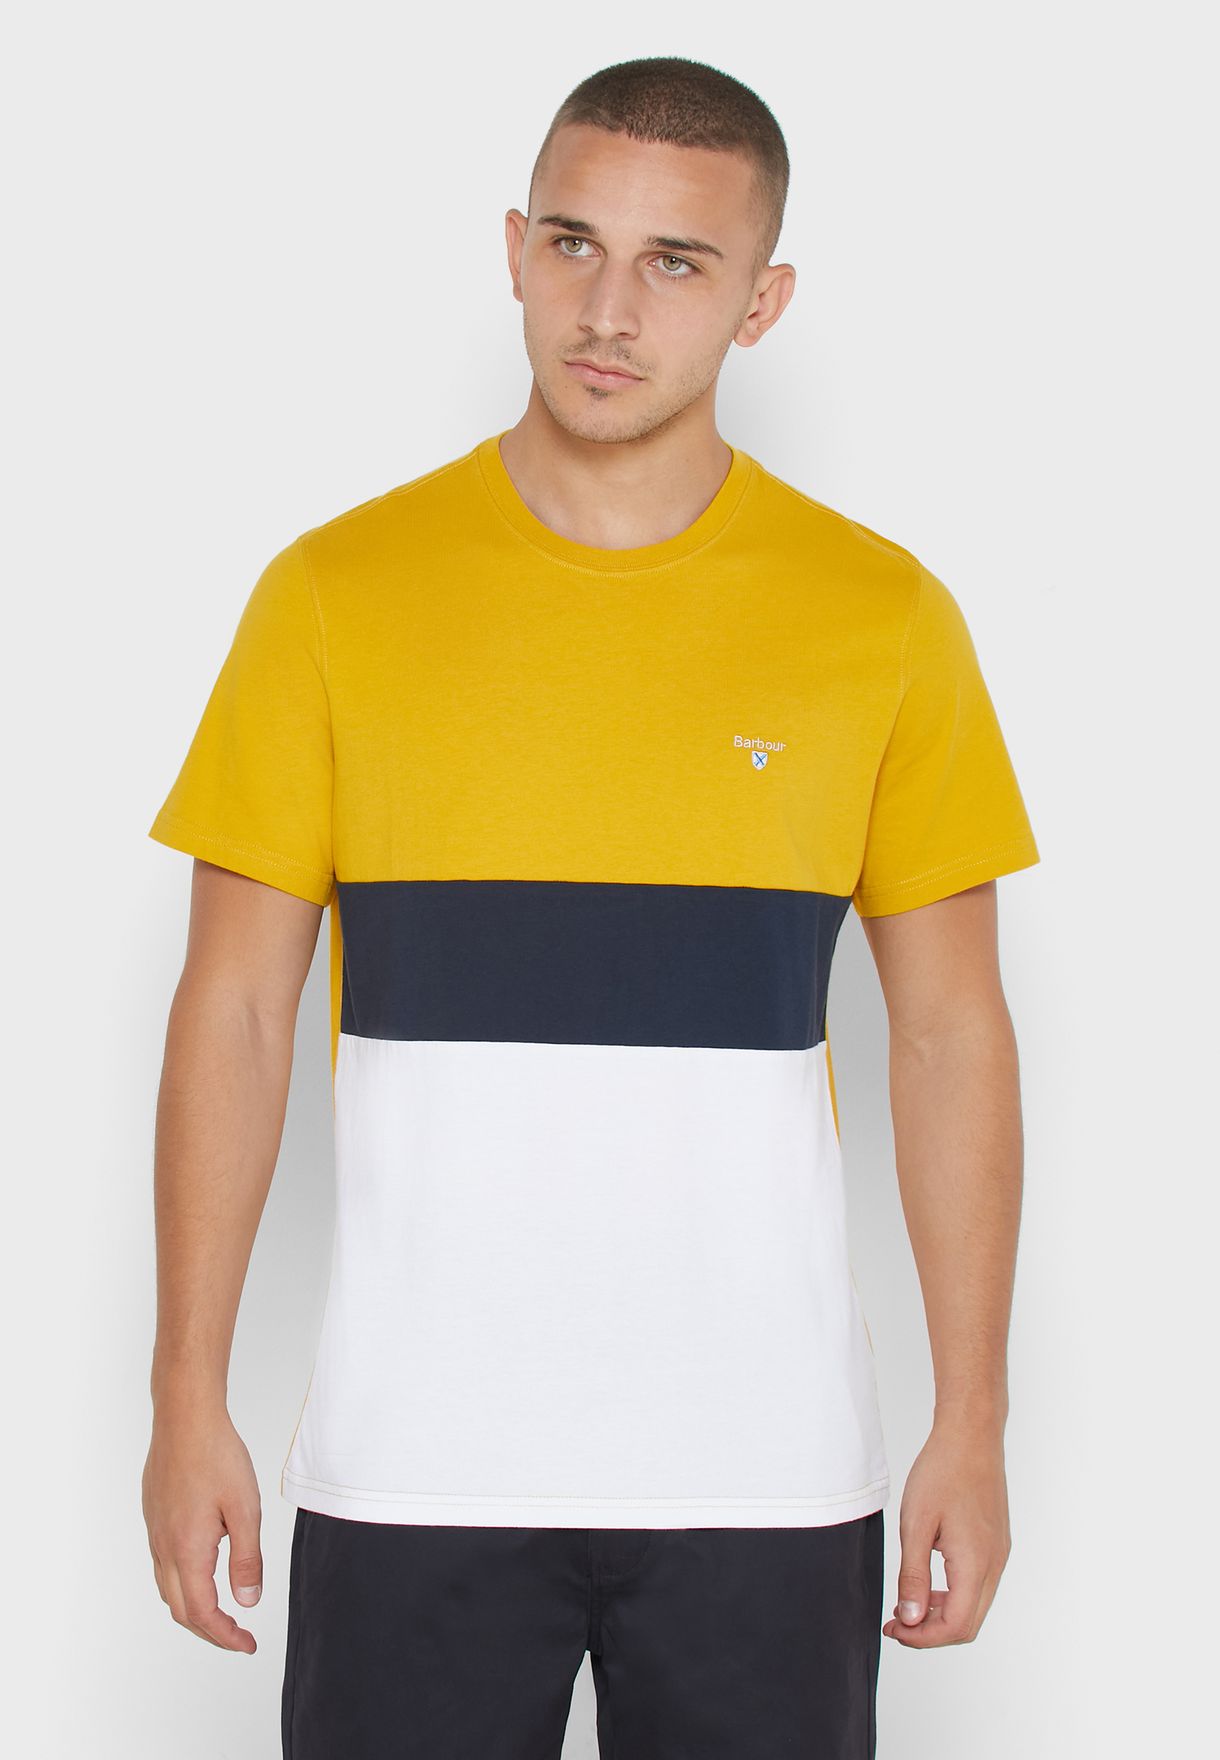 reebok classic t shirts yellow